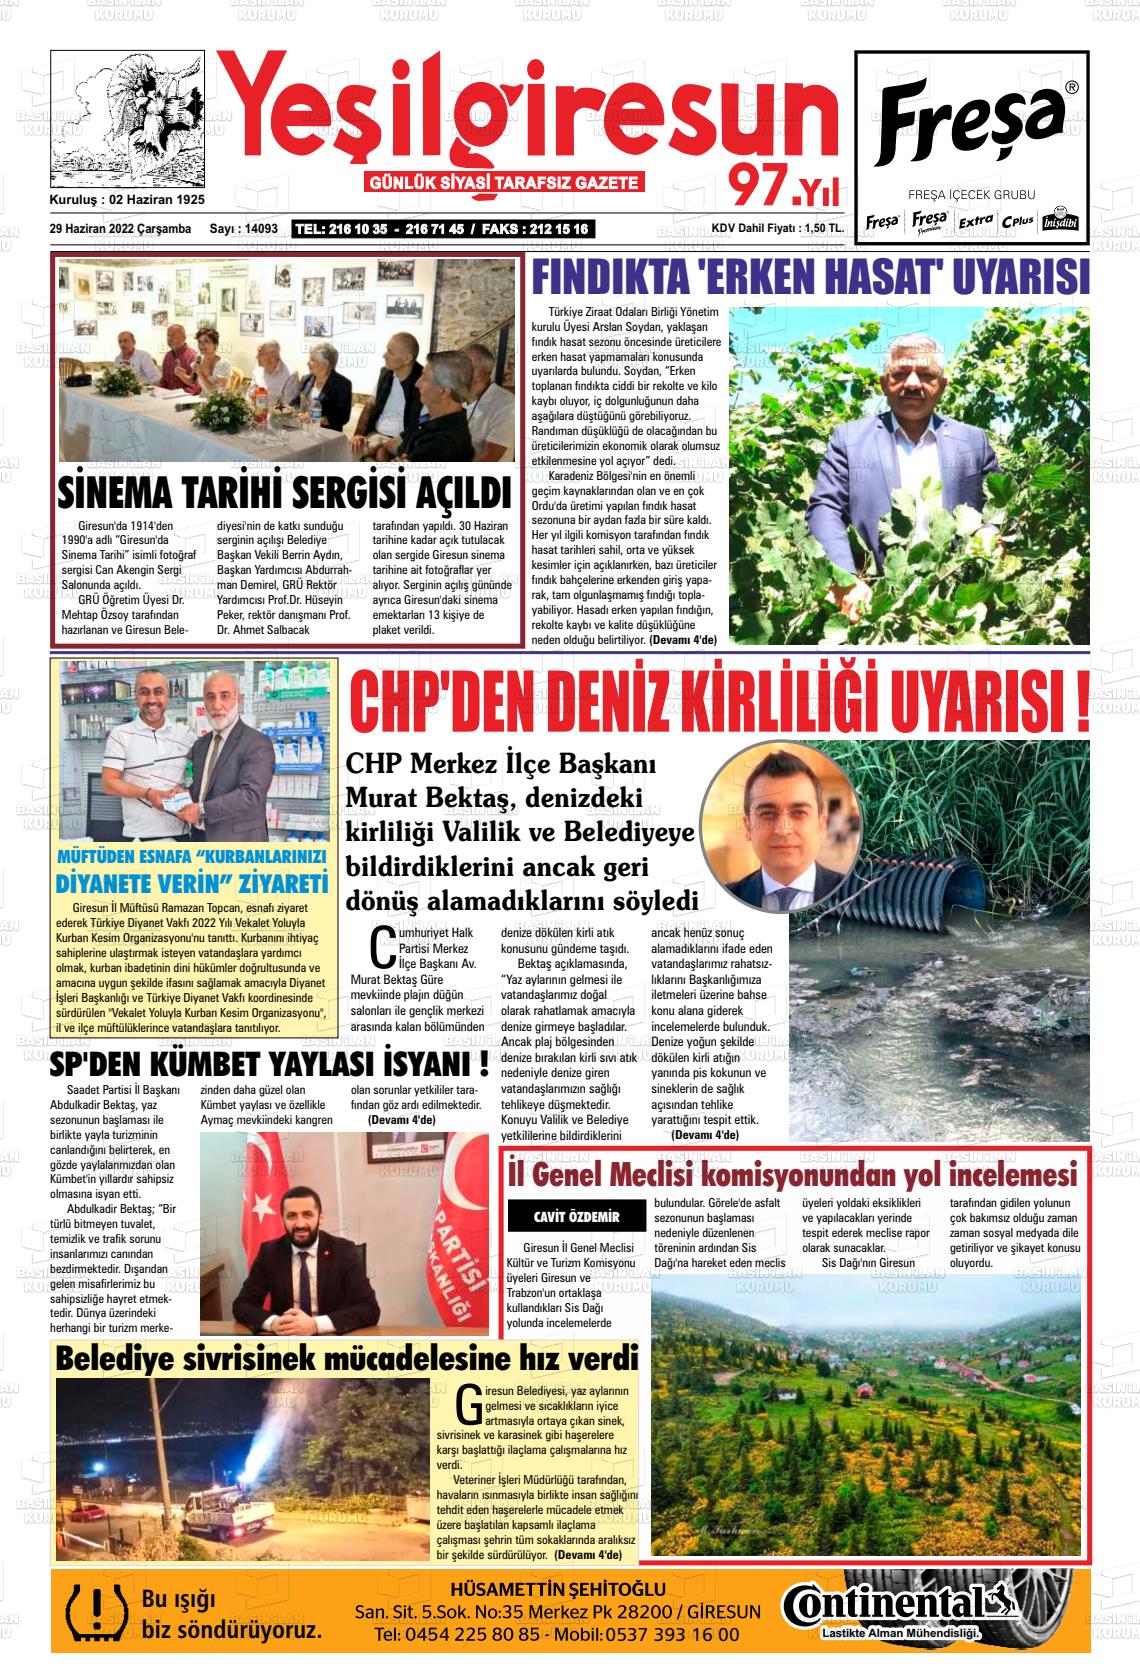 29 Haziran 2022 Yeşil Giresun Gazete Manşeti